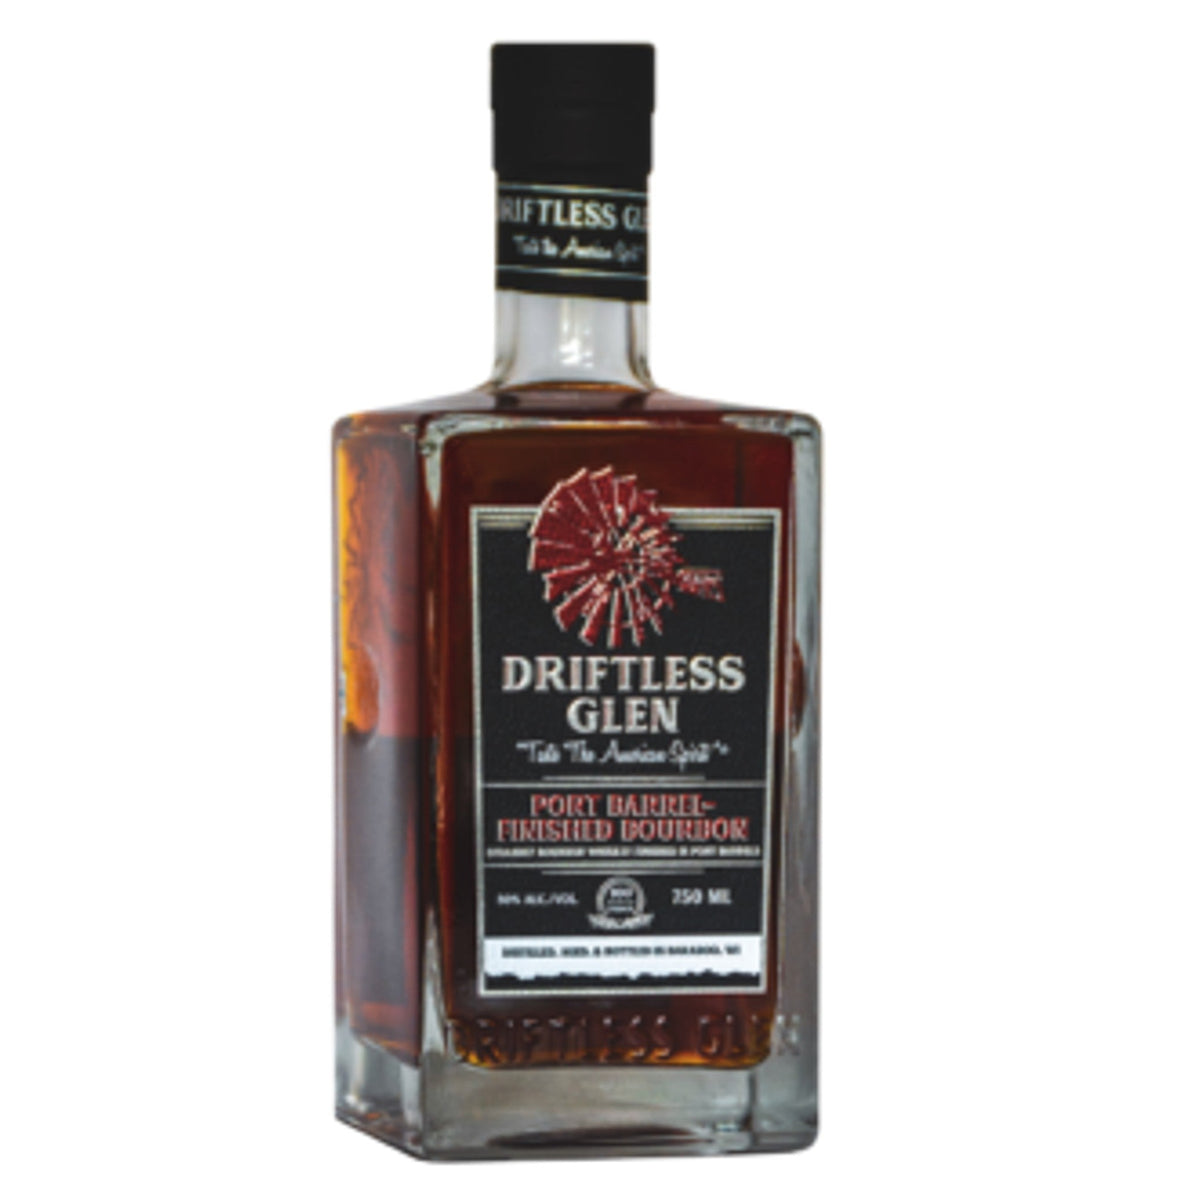 Driftless Glen Bourbon Whiskey - Port Barrel-Finished Bourbon (750ml)